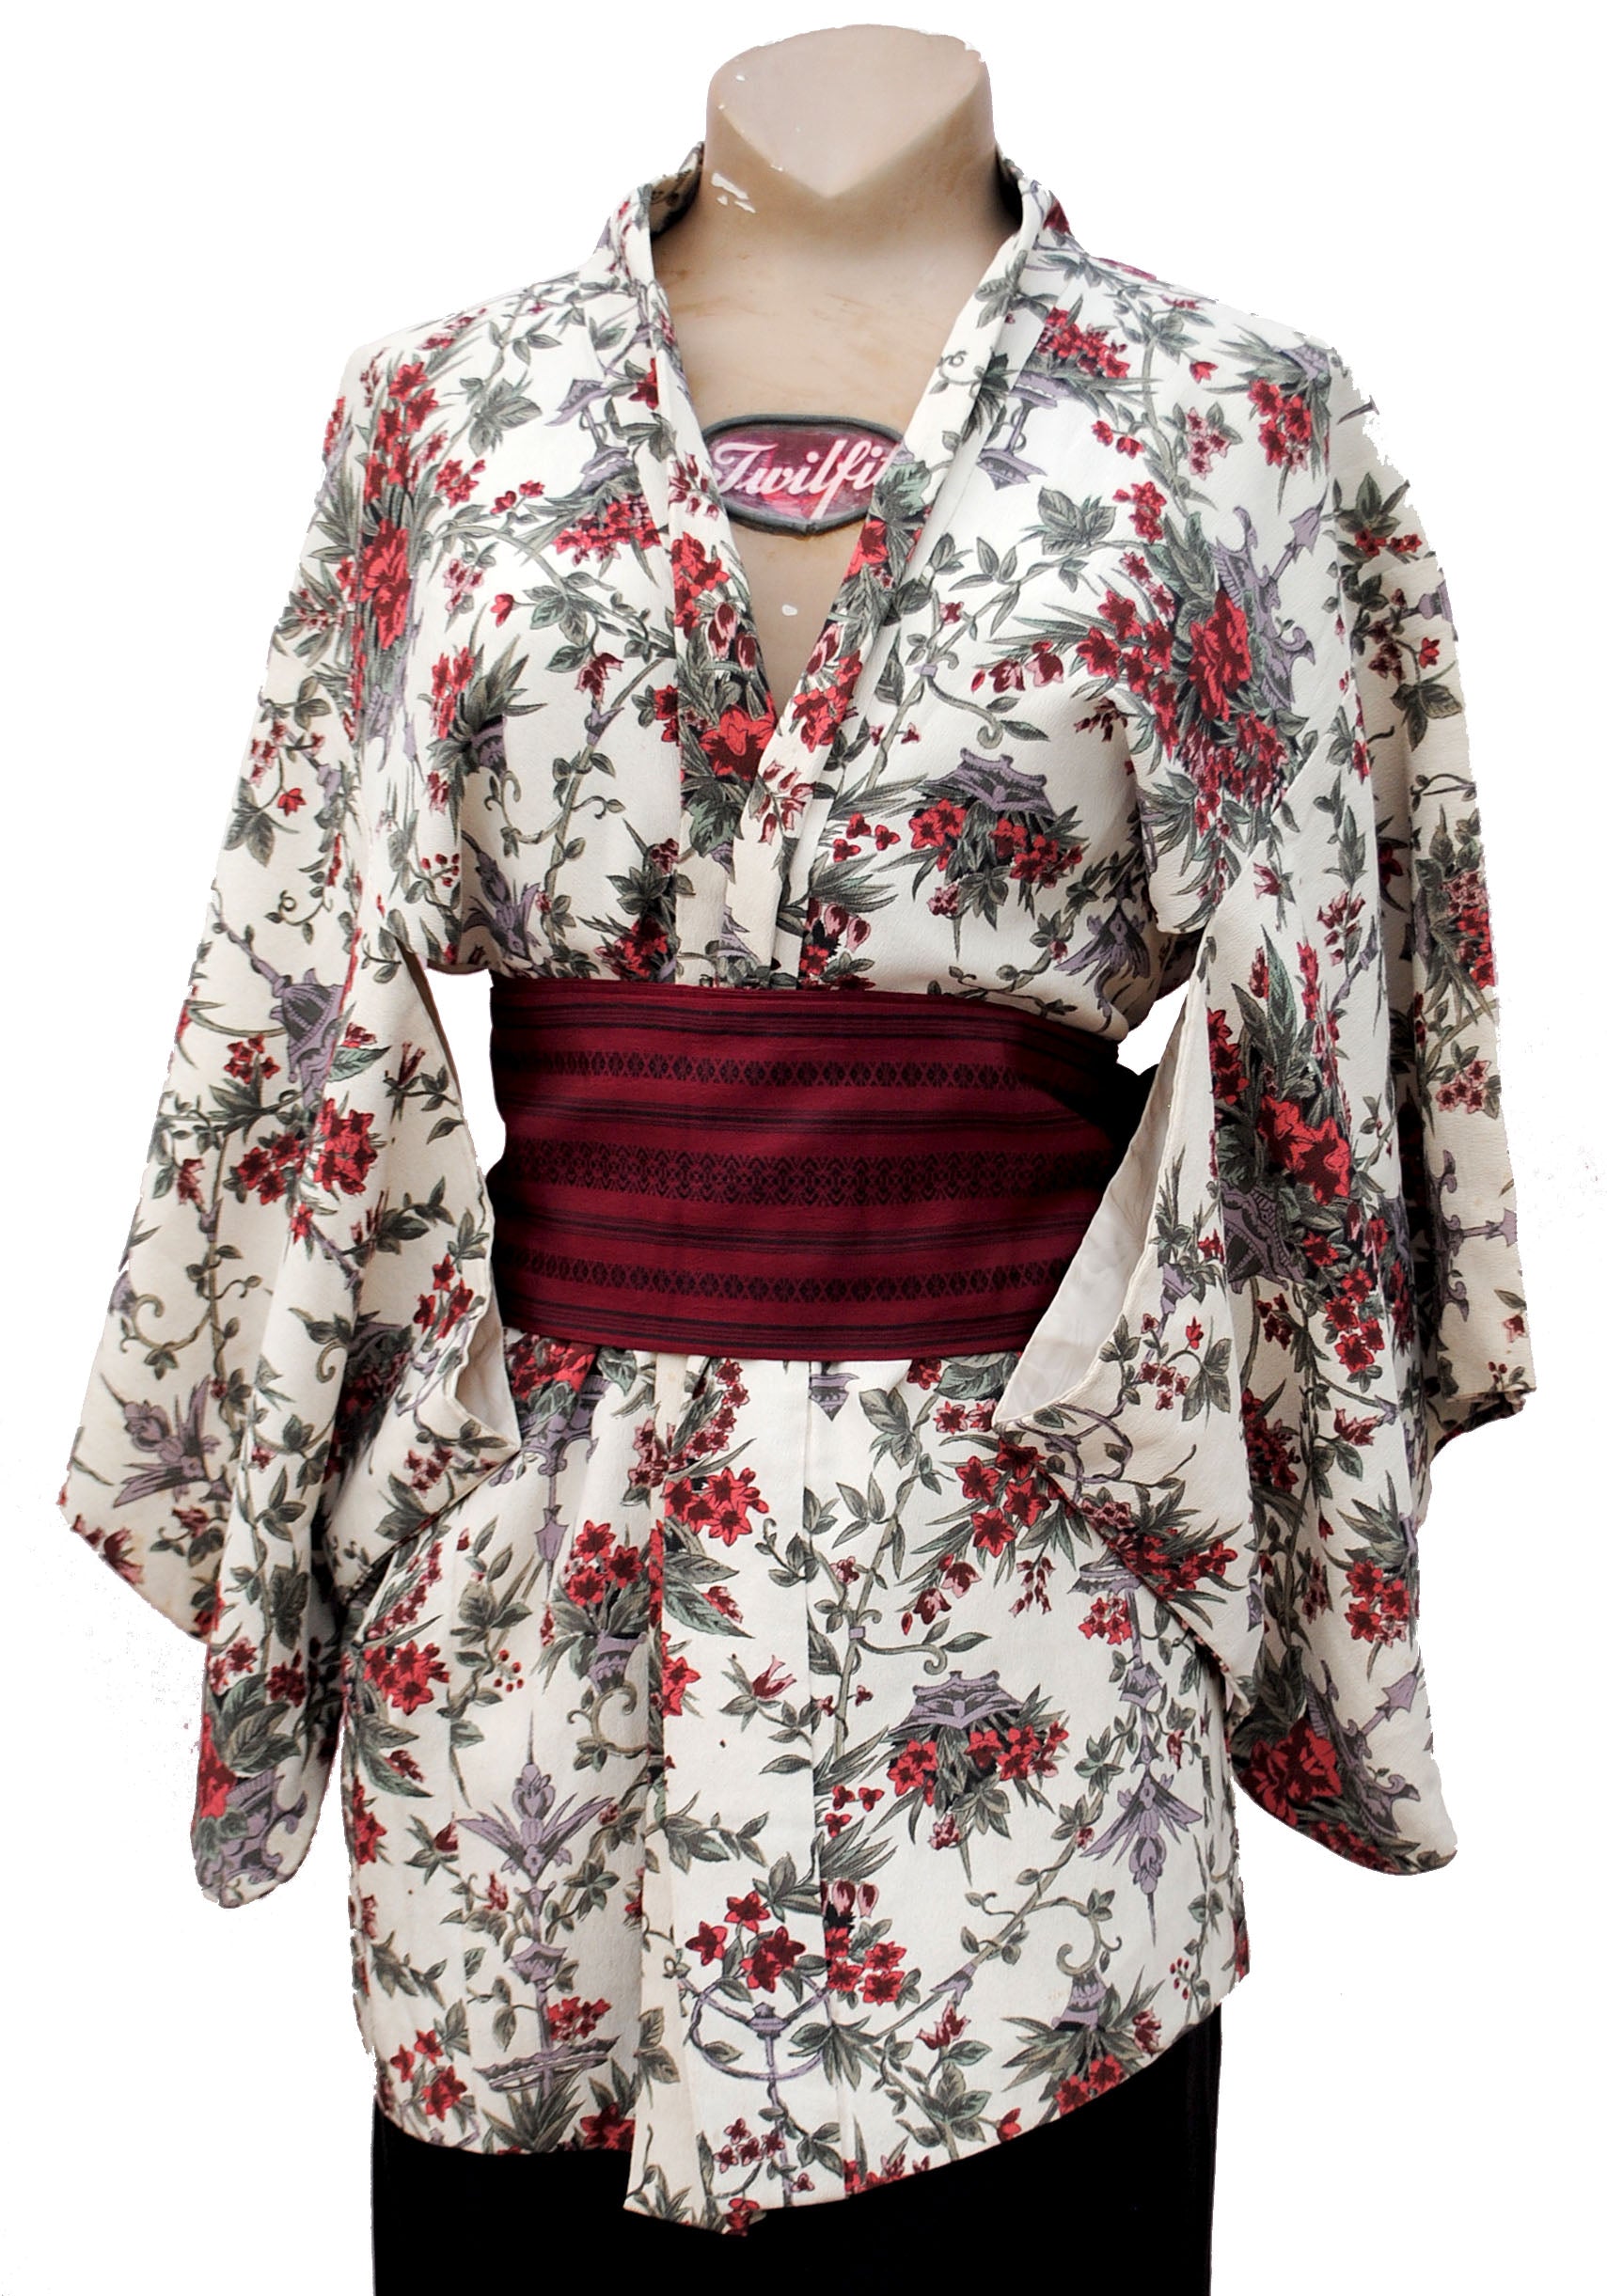 Vintage 1970s haori kimono robe with burgundy floral print